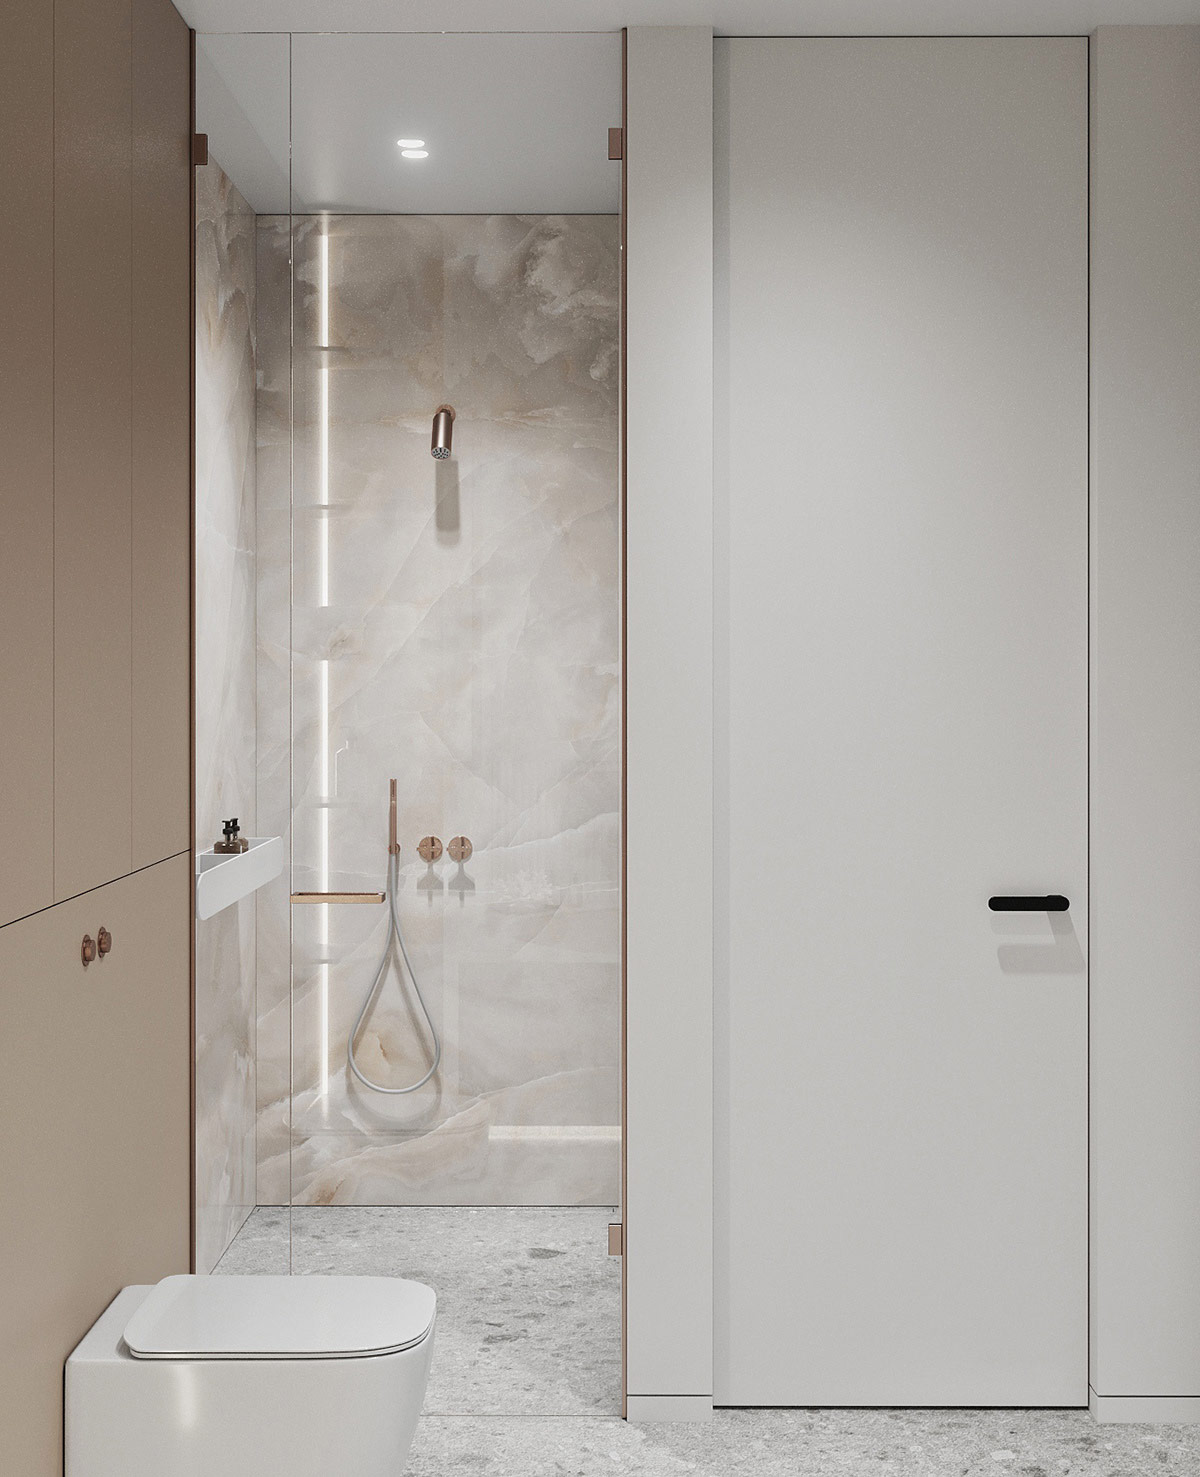 Copper Shower Fixtures Interior Design Ideas